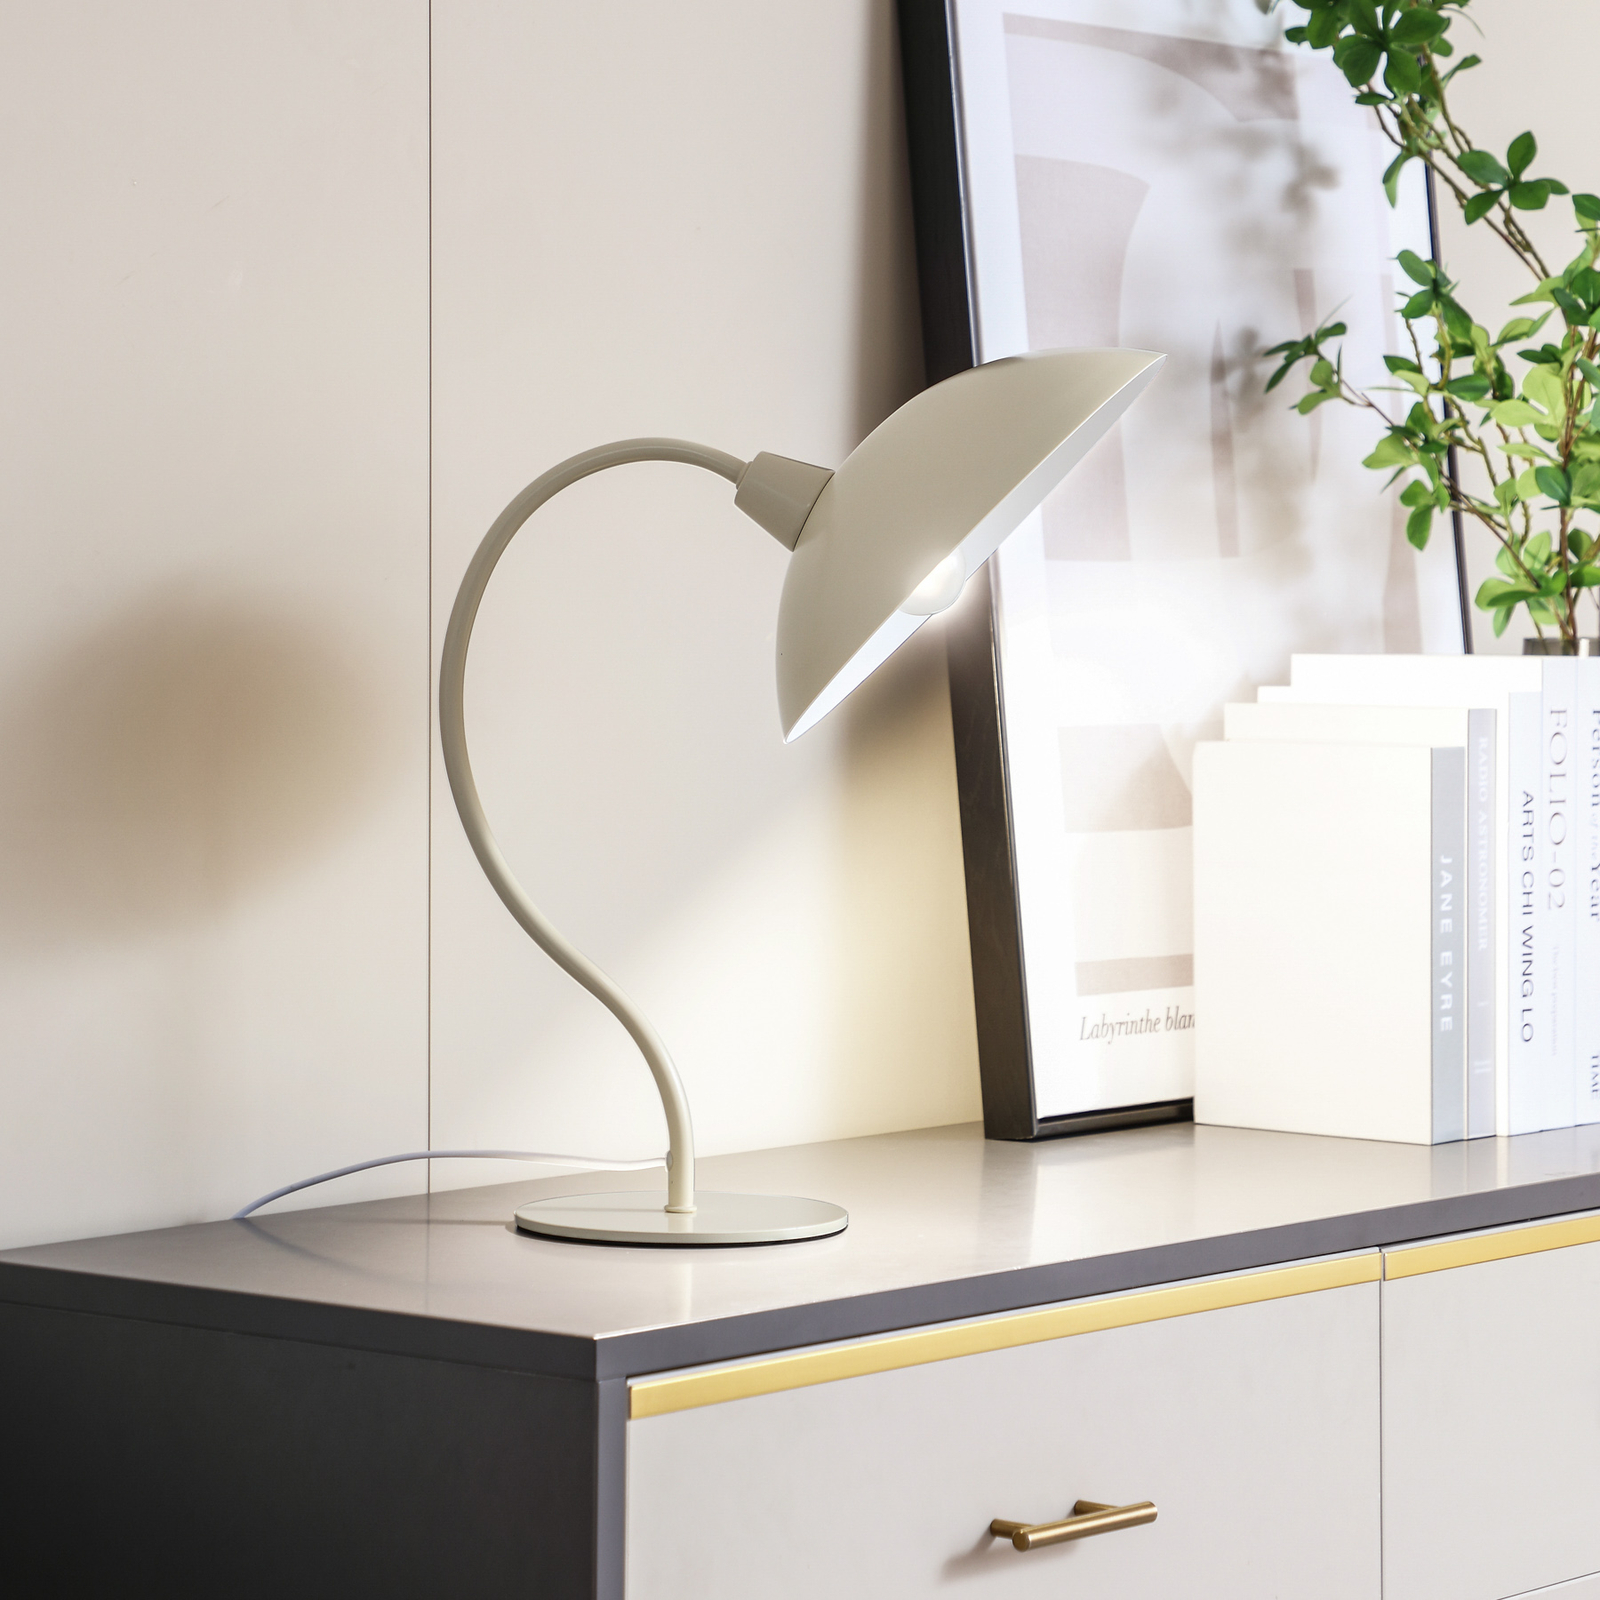 Lucande tafellamp Arvadon, beige, metaal, 42,75 cm hoog